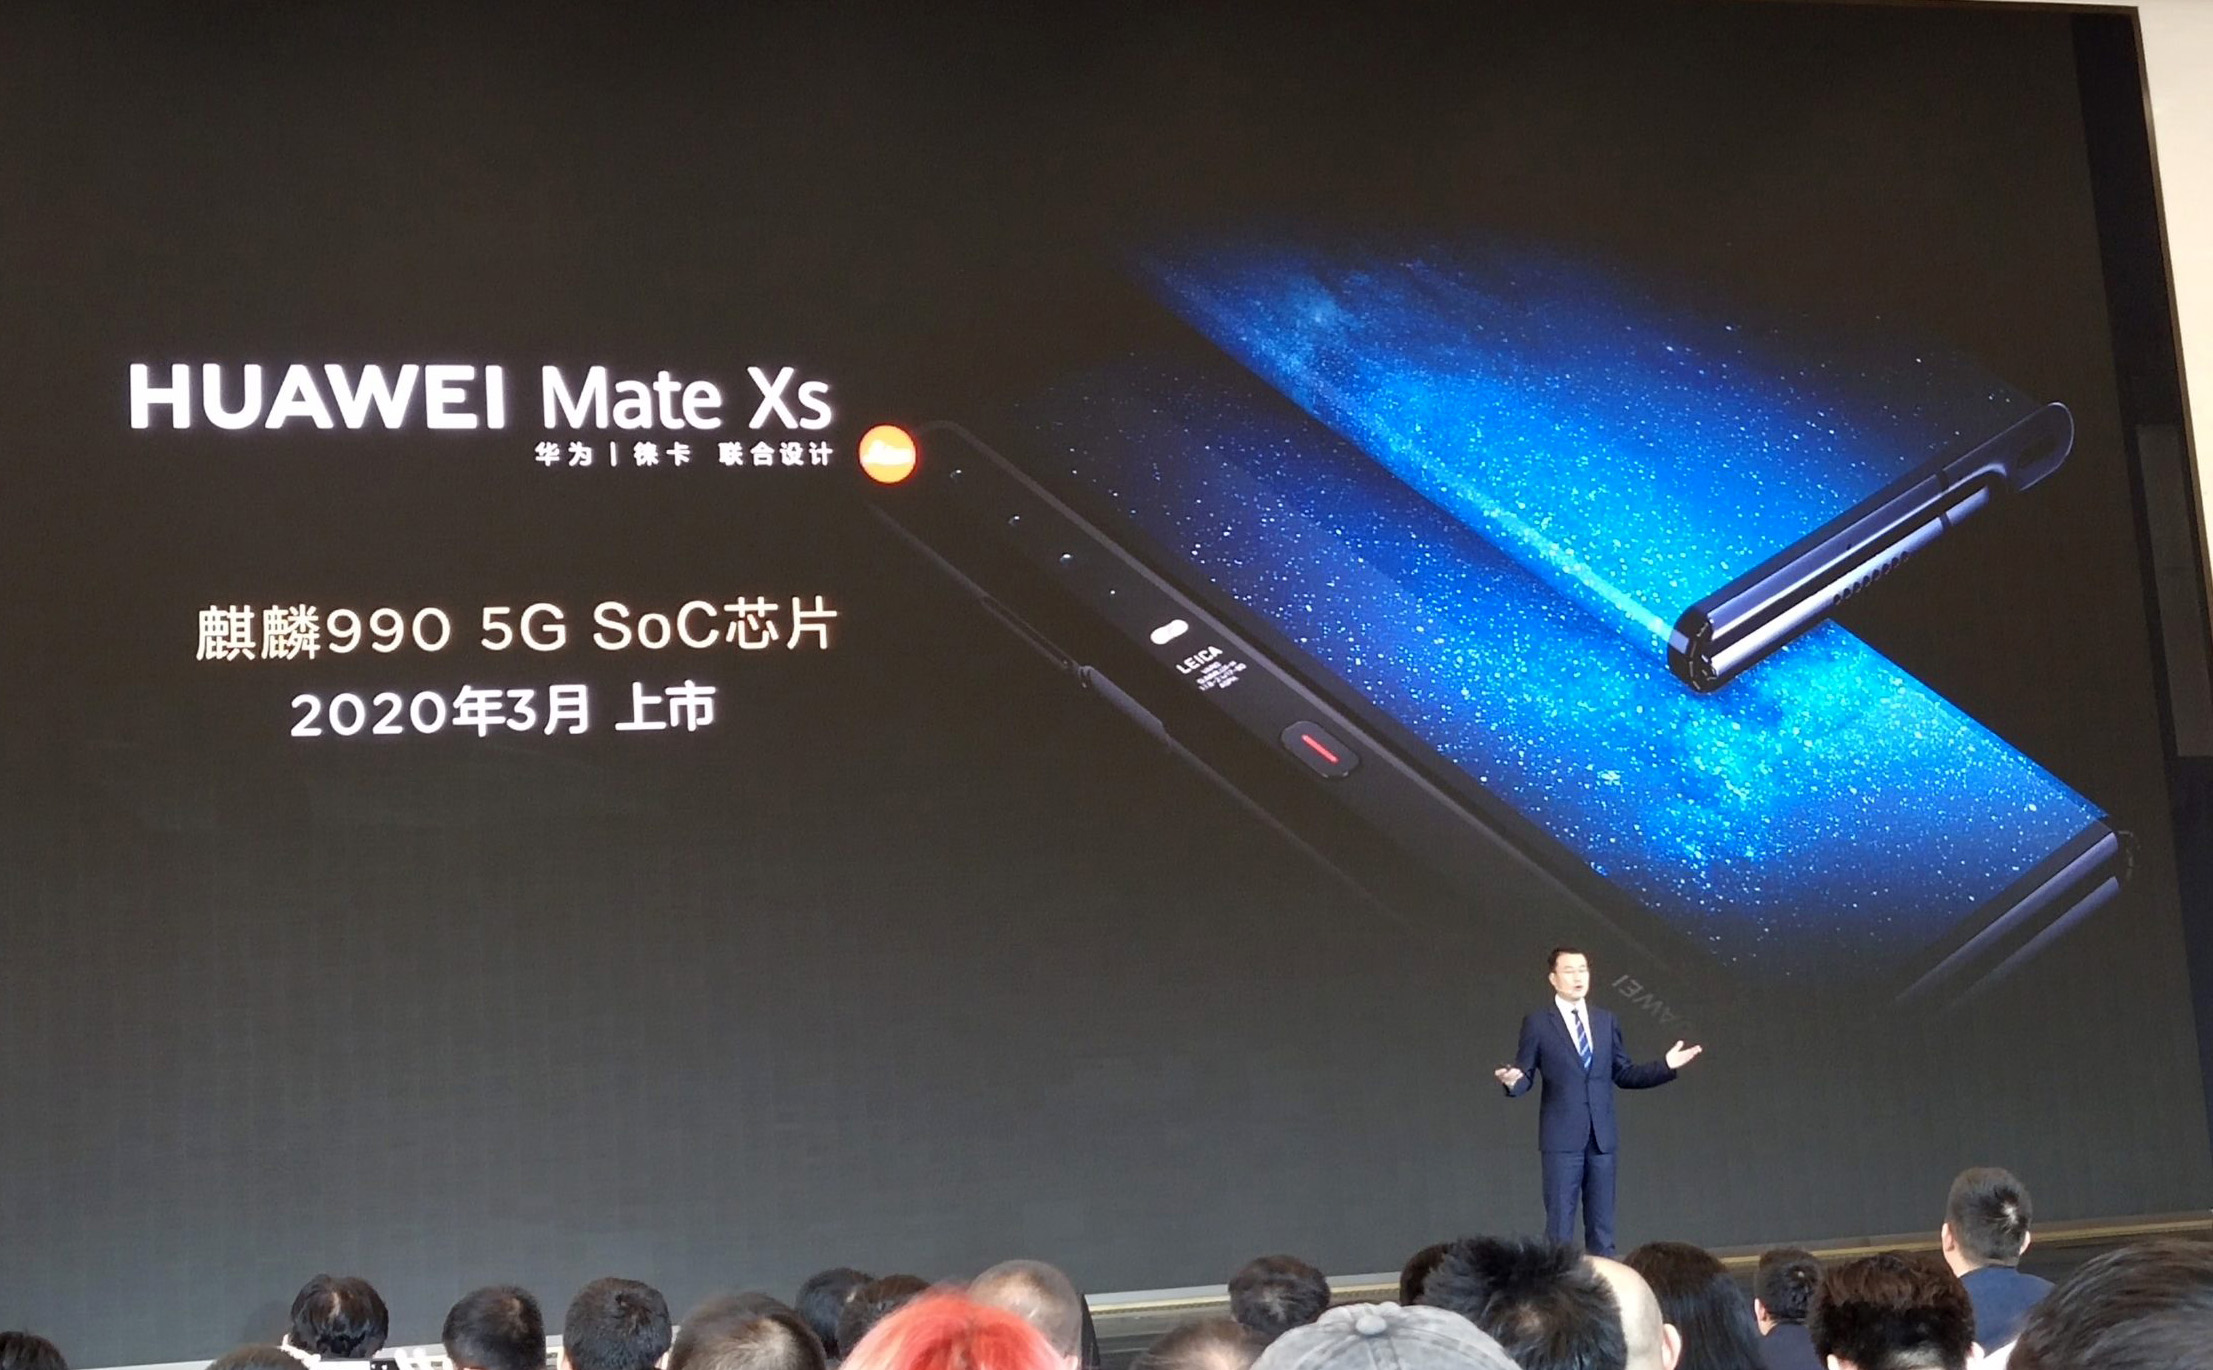 Huawei Mate Xs cải tiến bản lề, màn hình, chip Kirin 990 5G, tháng 2 năm sau ra mắt